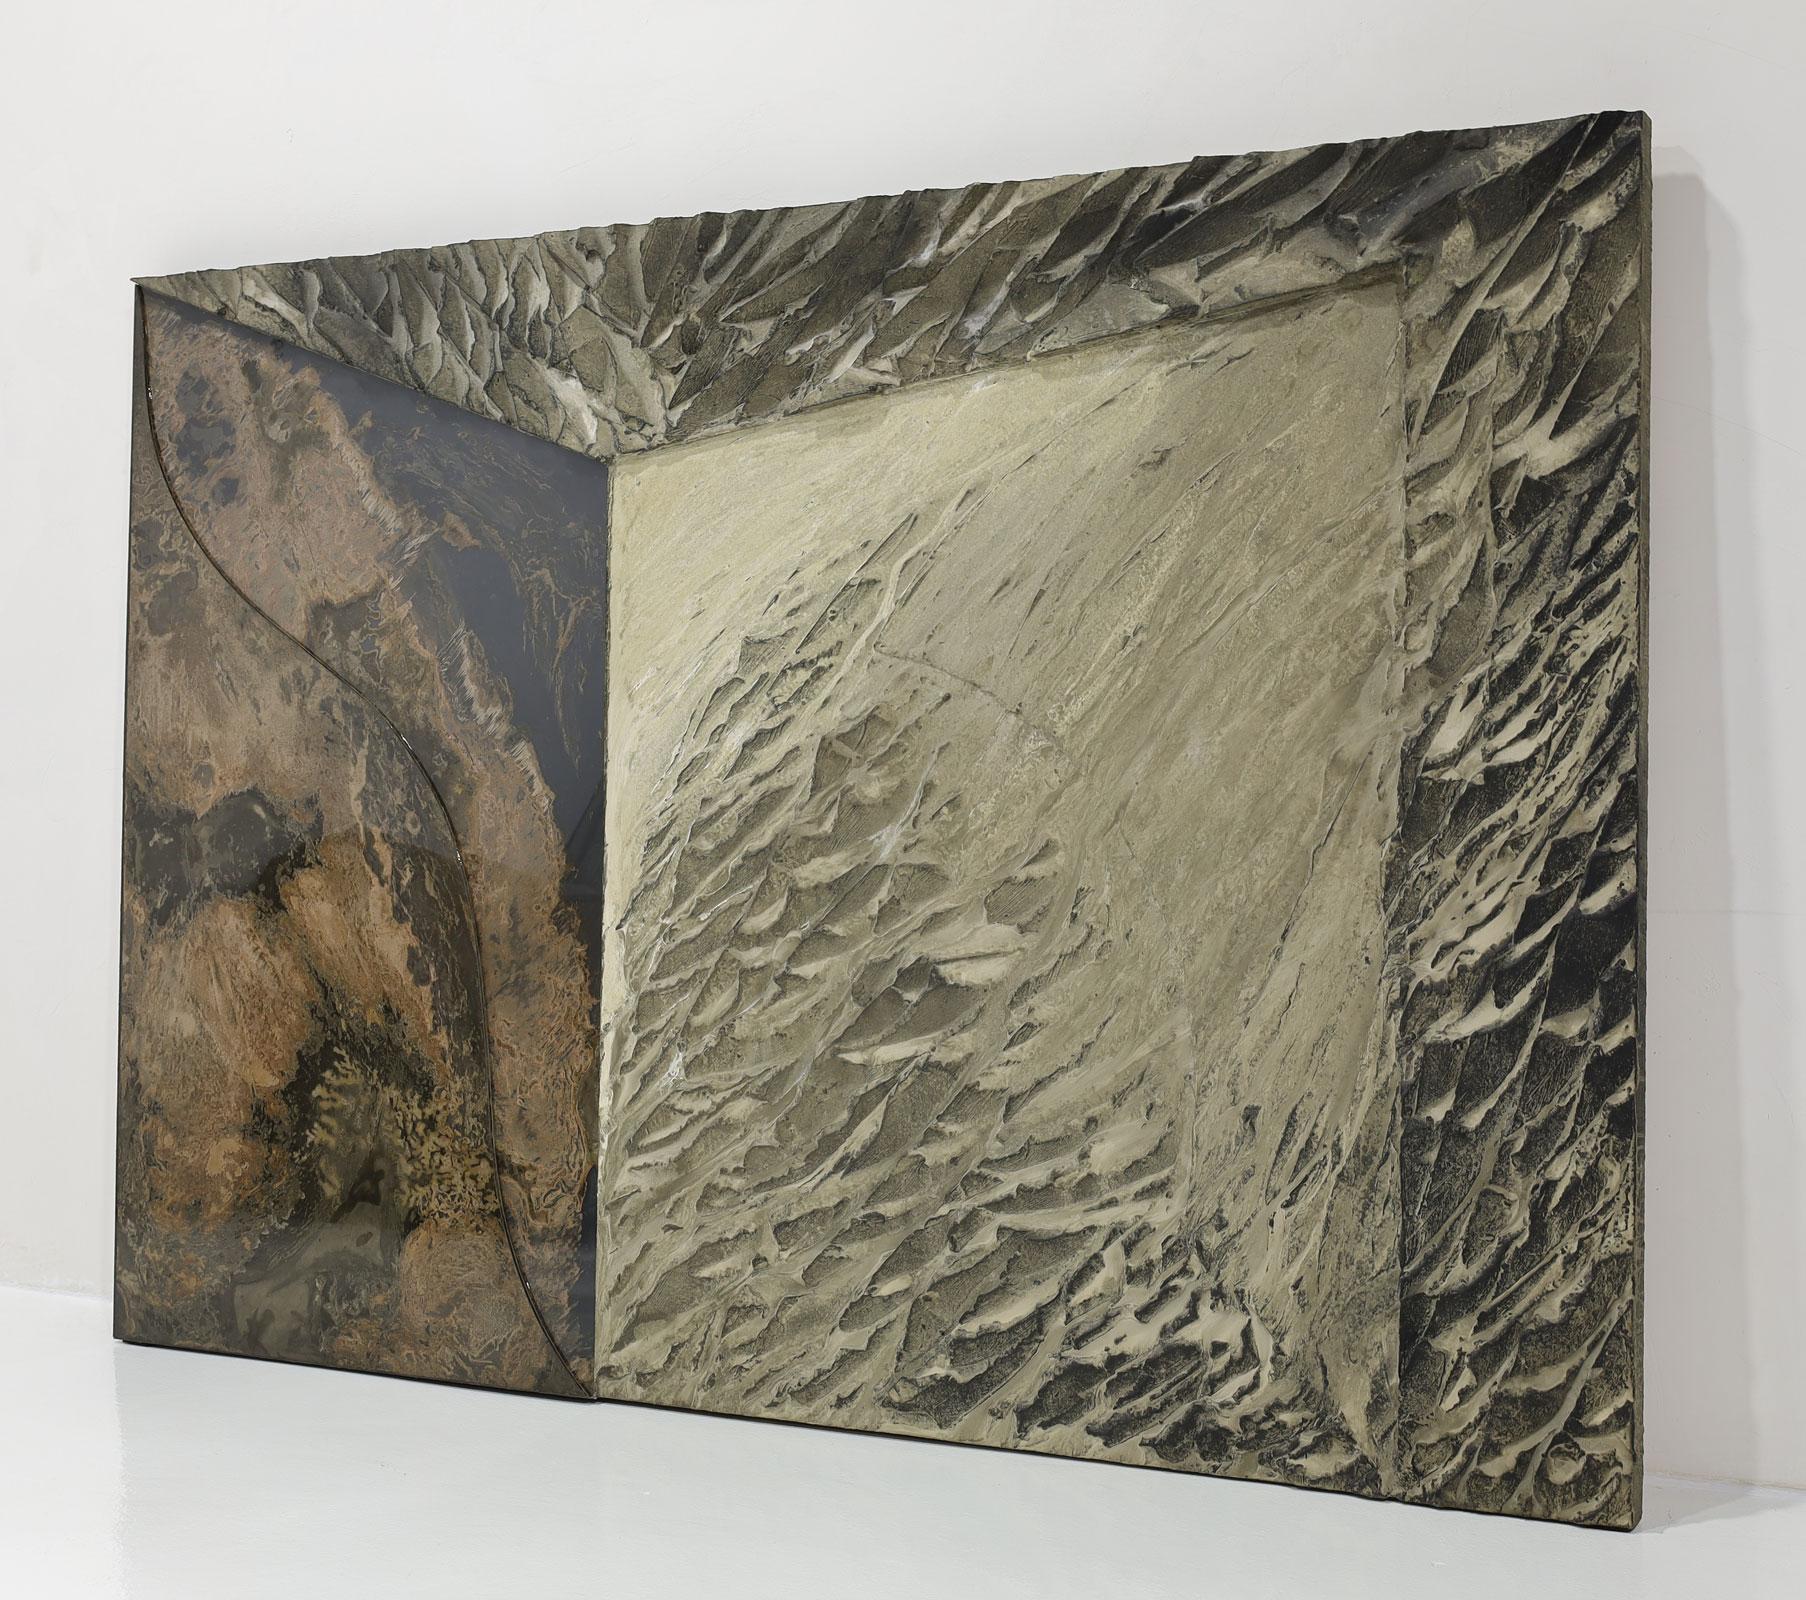 Une magnifique œuvre d'art à grande échelle de Laddie John Dill.  Les œuvres sont composées de ciment, de verre, de bois et de pigments appliqués sur des toiles. Signée et datée au verso.
Extrait du site web de l'artiste :
Laddie John Dill, un